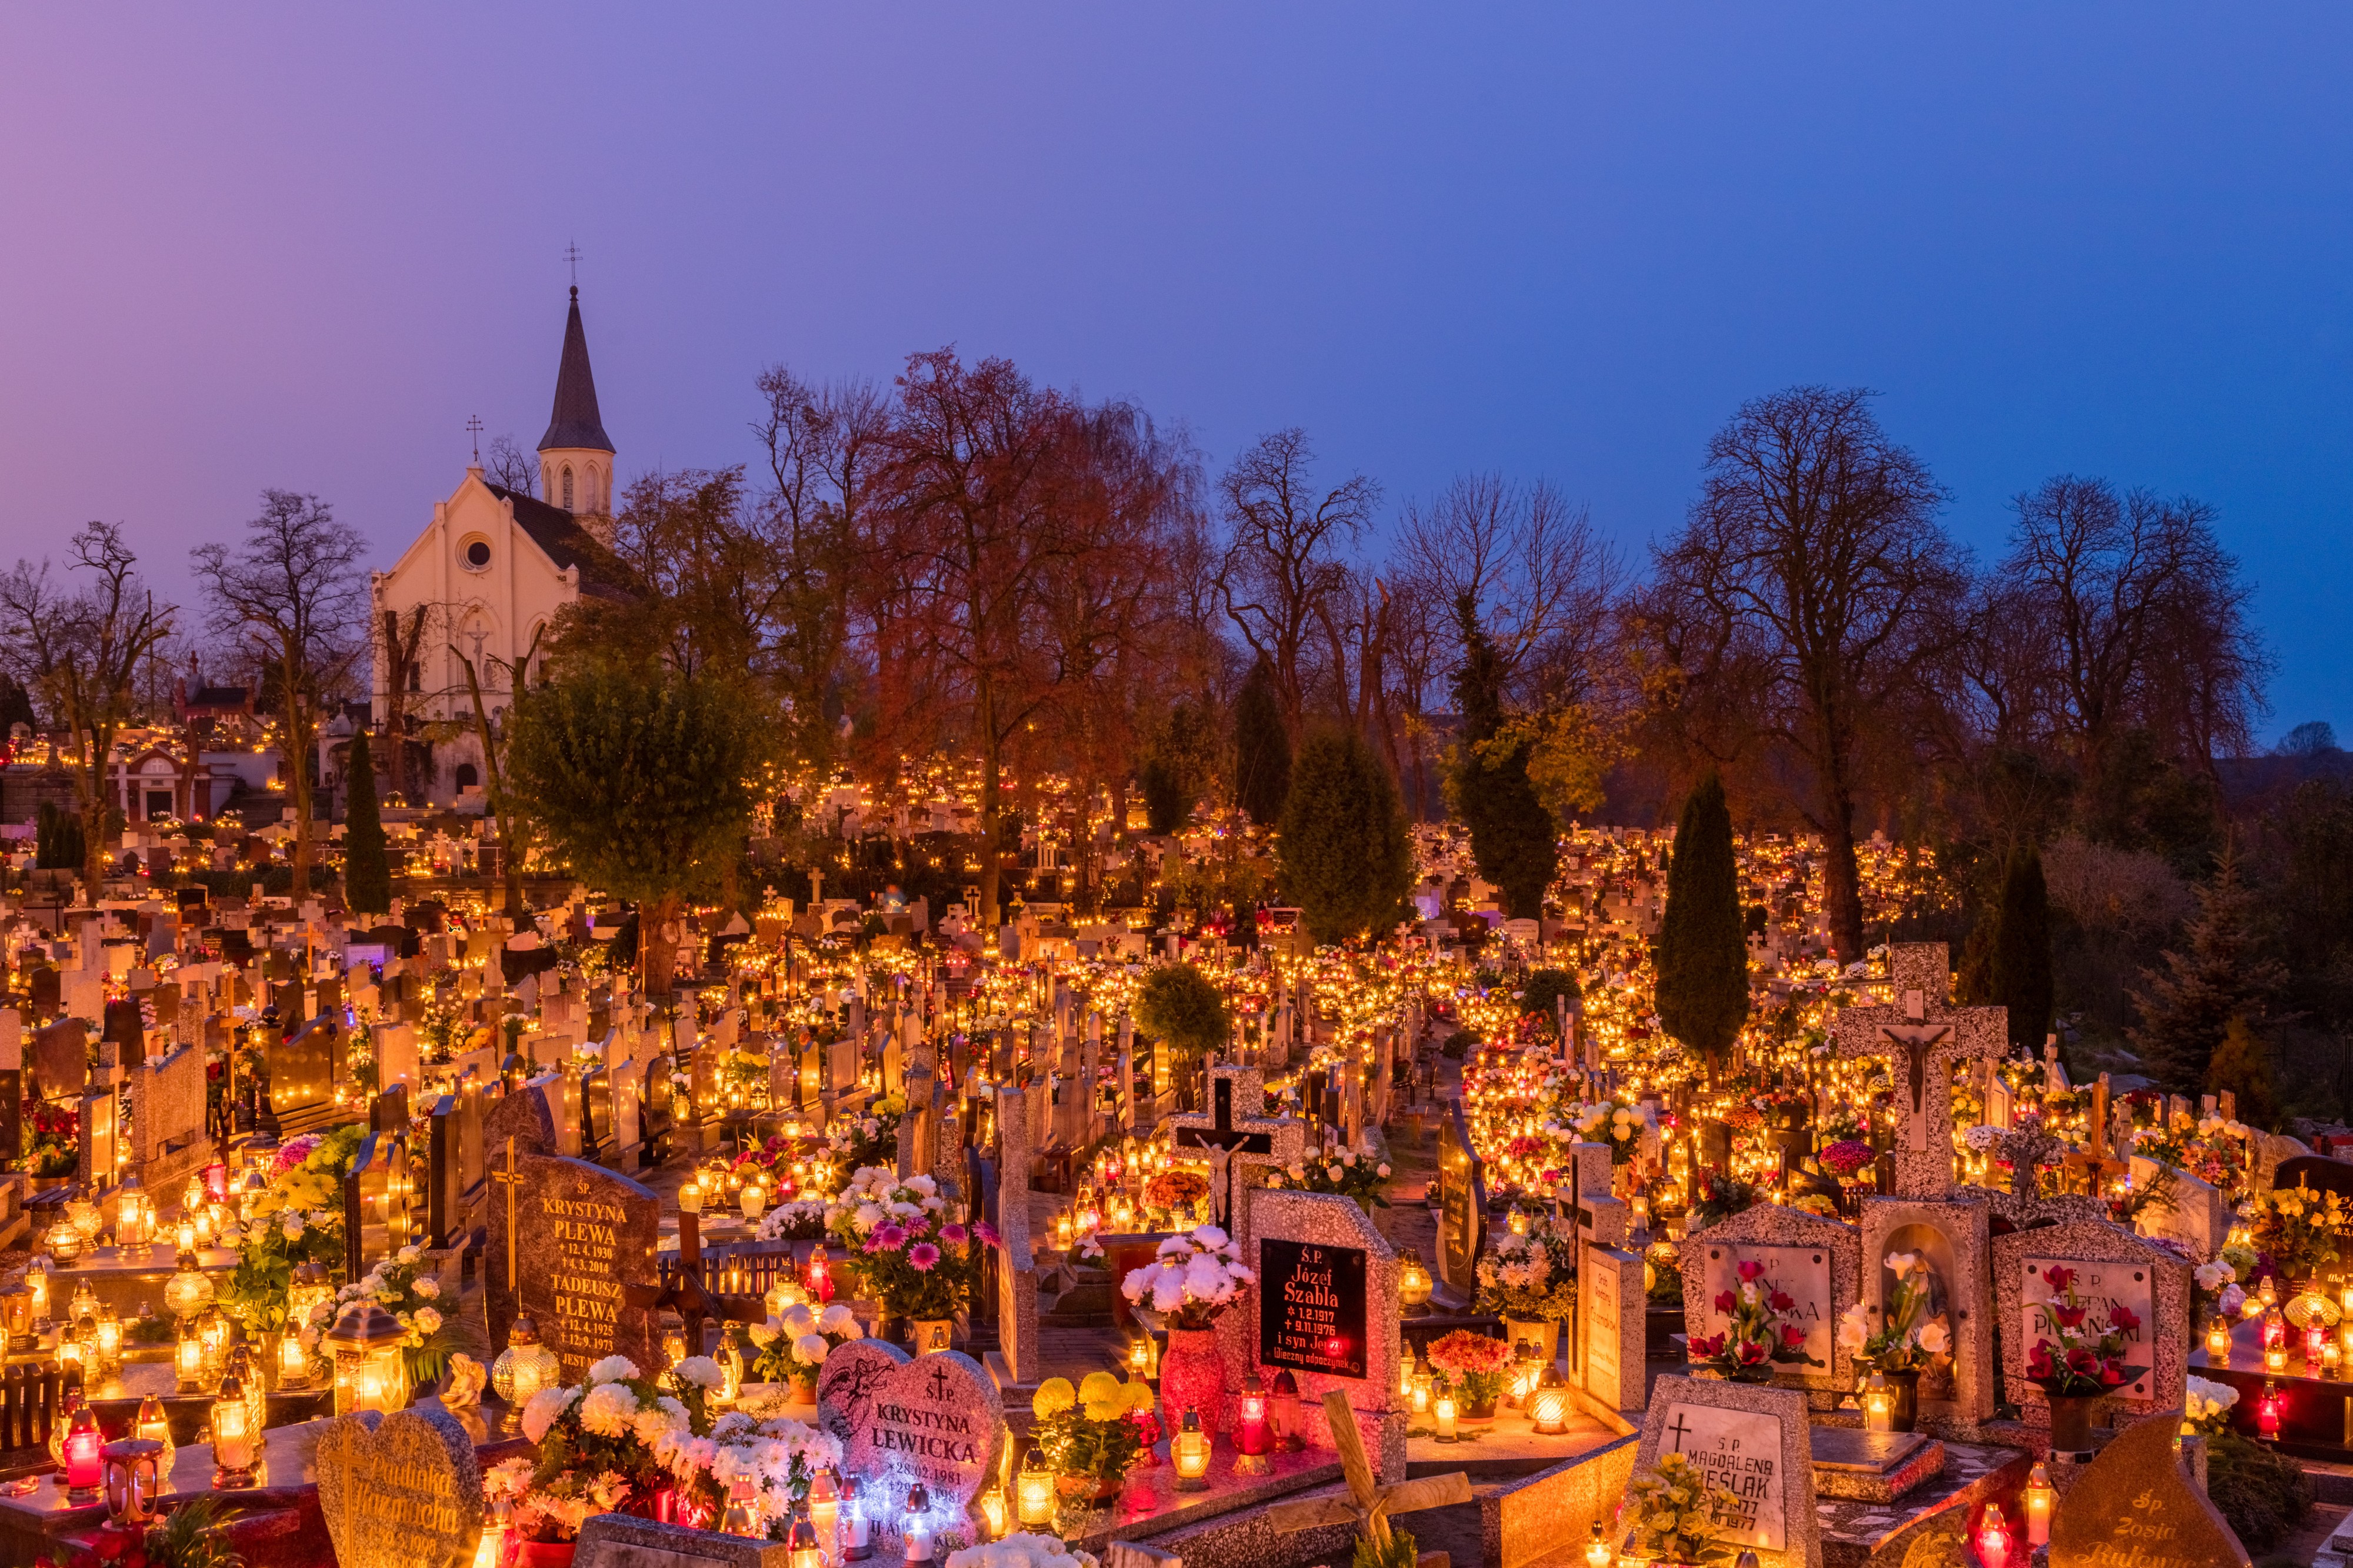 Celebración de Todos los Santos, cementerio de la Santa Cruz, Gniezno, Polonia, 2017-11-01, DD 10-12 HDR